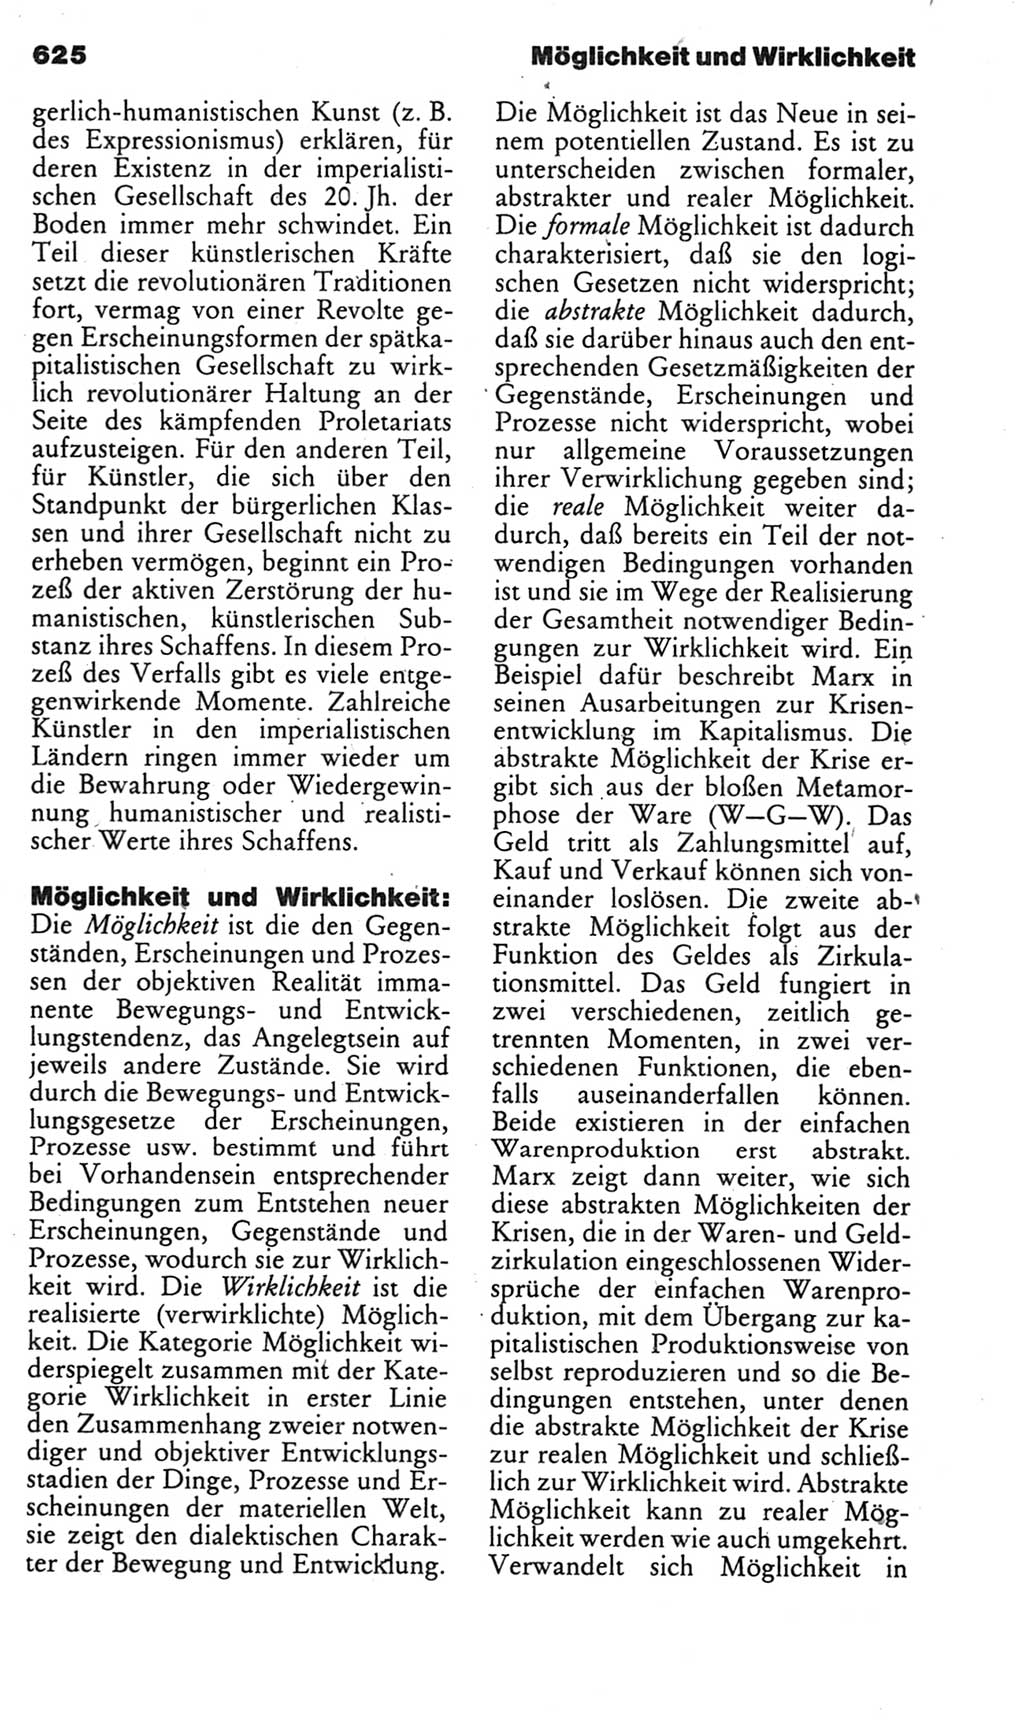 Kleines politisches Wörterbuch [Deutsche Demokratische Republik (DDR)] 1985, Seite 625 (Kl. pol. Wb. DDR 1985, S. 625)